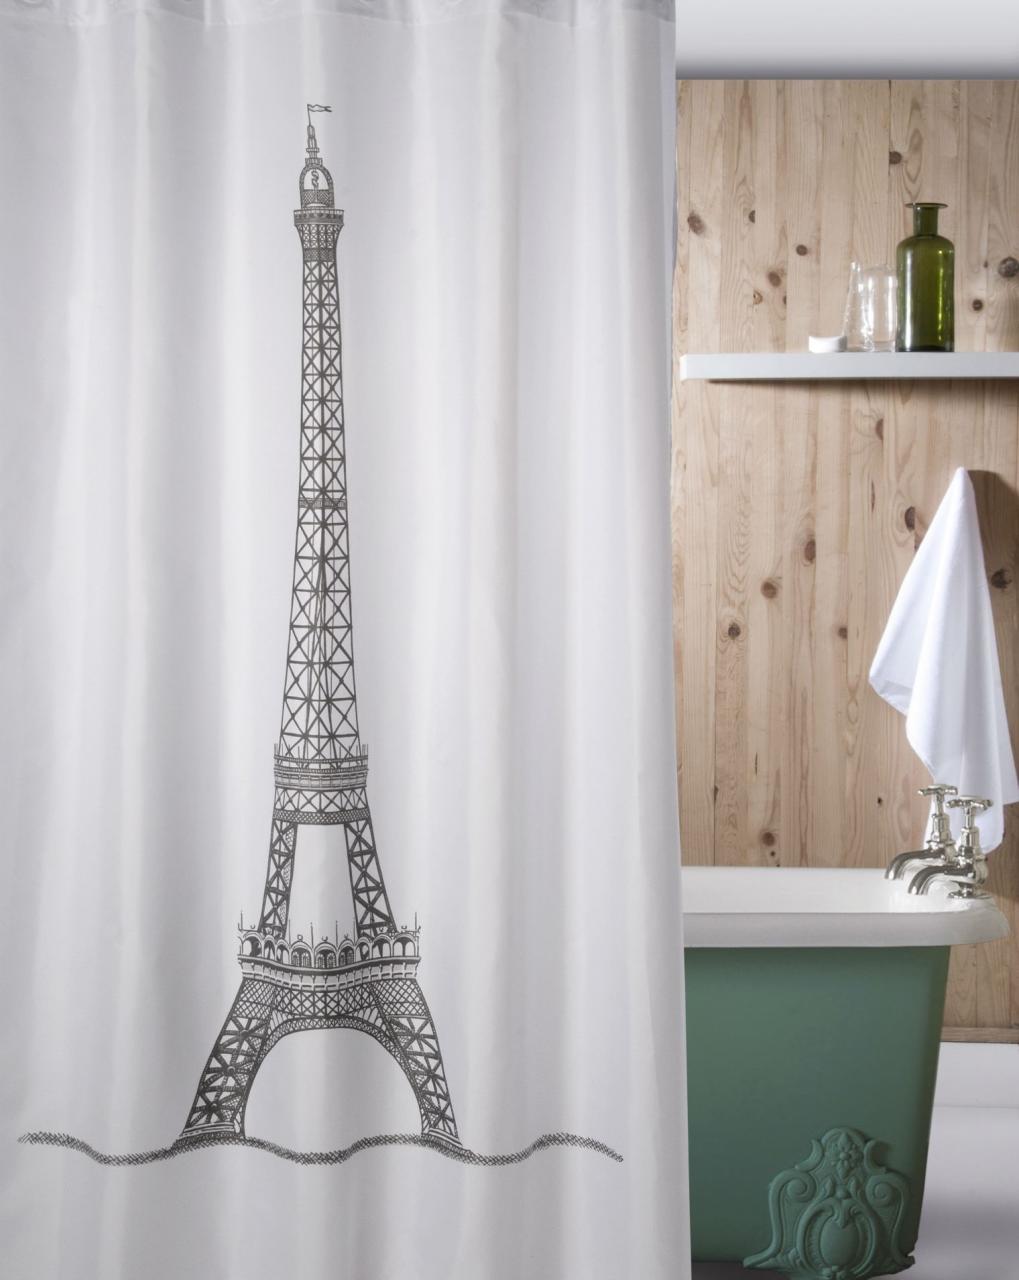 PARIS EIFFEL TOWER SHOWER CURTAIN European Classic Bathroom Decor